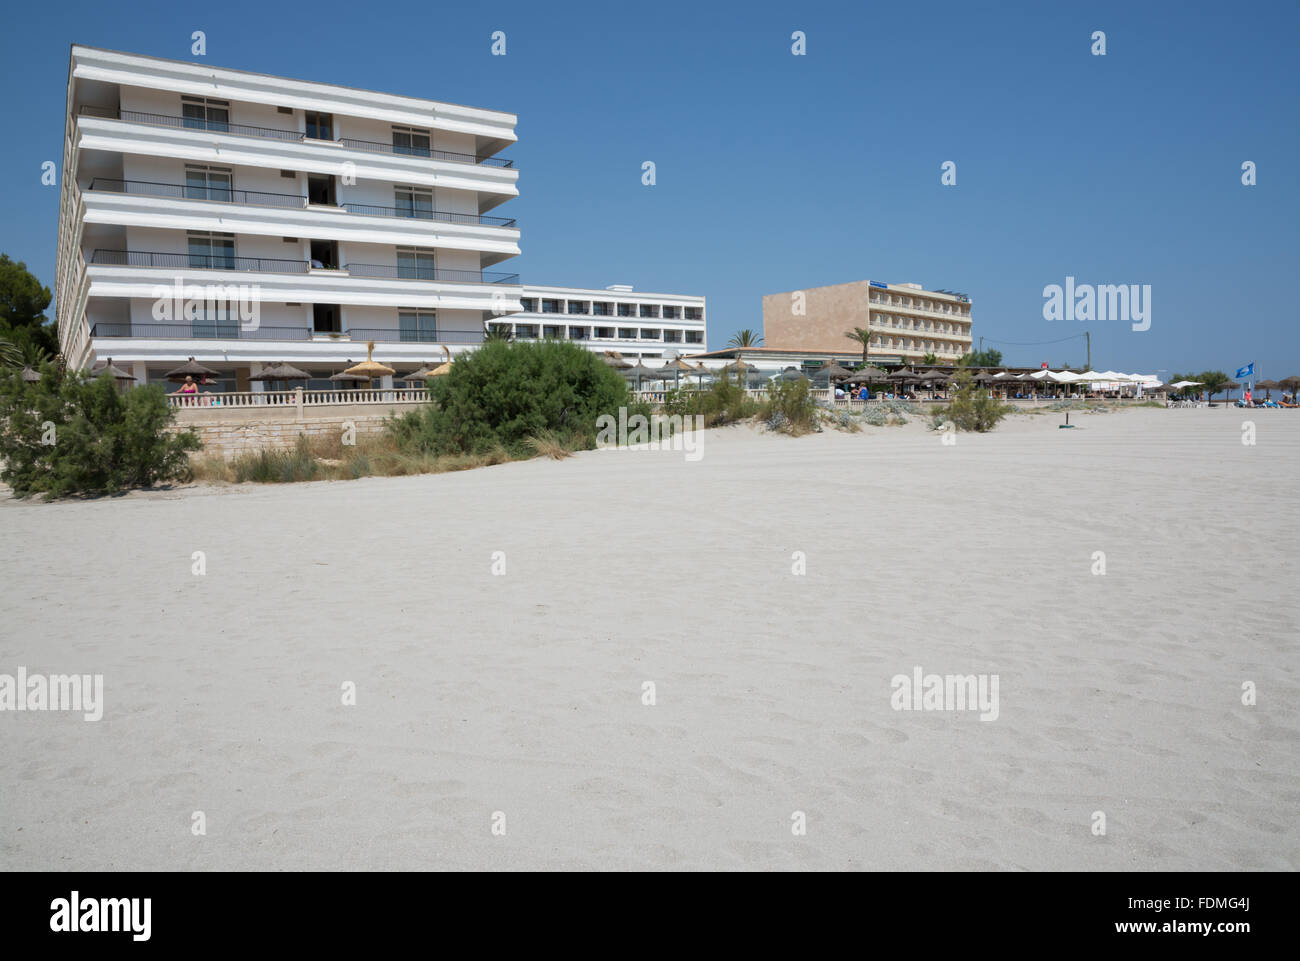 Spiaggia bandiera blu con hotel su una soleggiata giornata estiva sulla luglio 12, 2013 in Can Picafort, Maiorca, isole Baleari, Spagna. Foto Stock